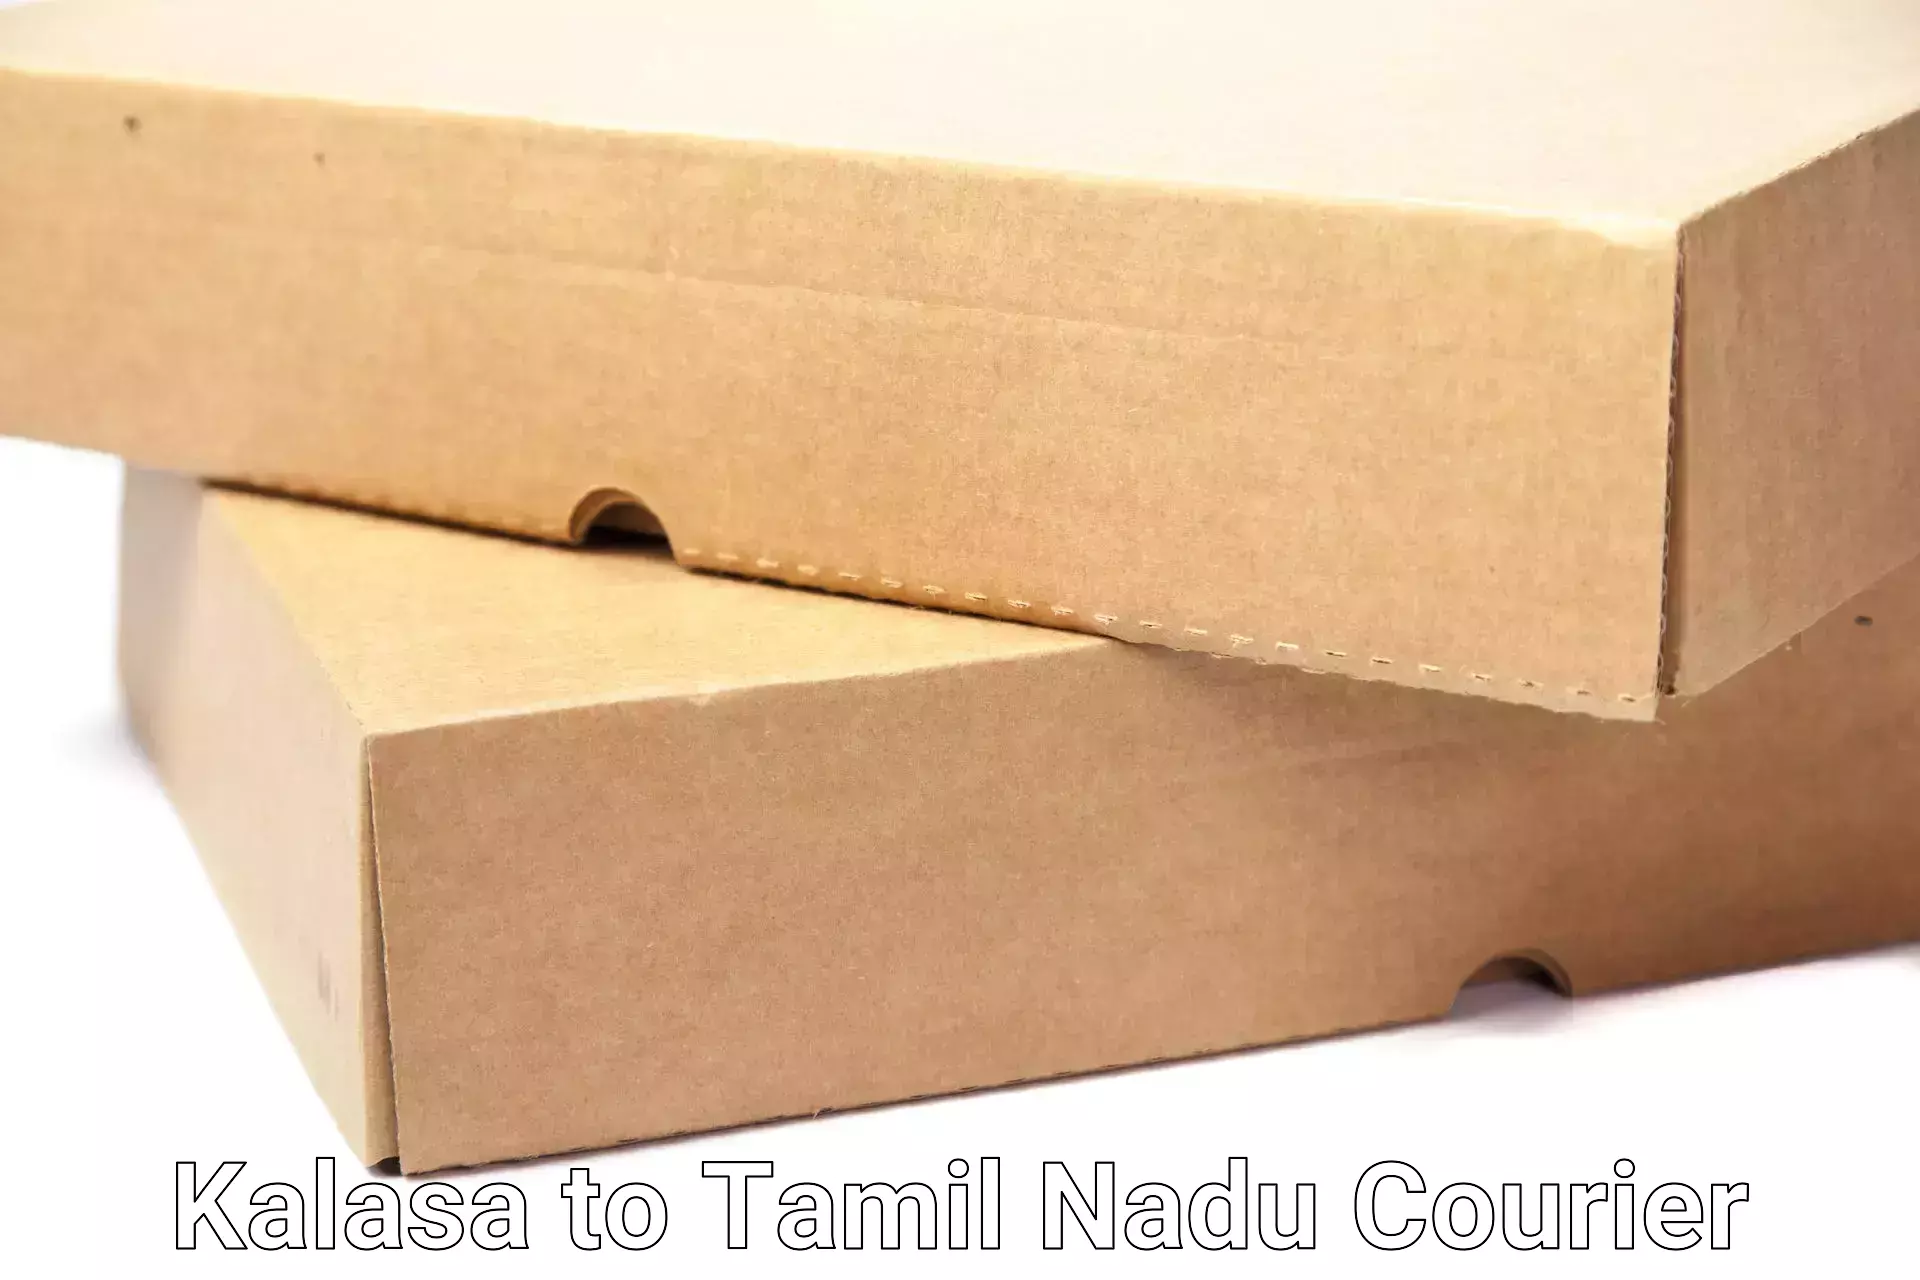 Efficient moving strategies Kalasa to Tamil Nadu